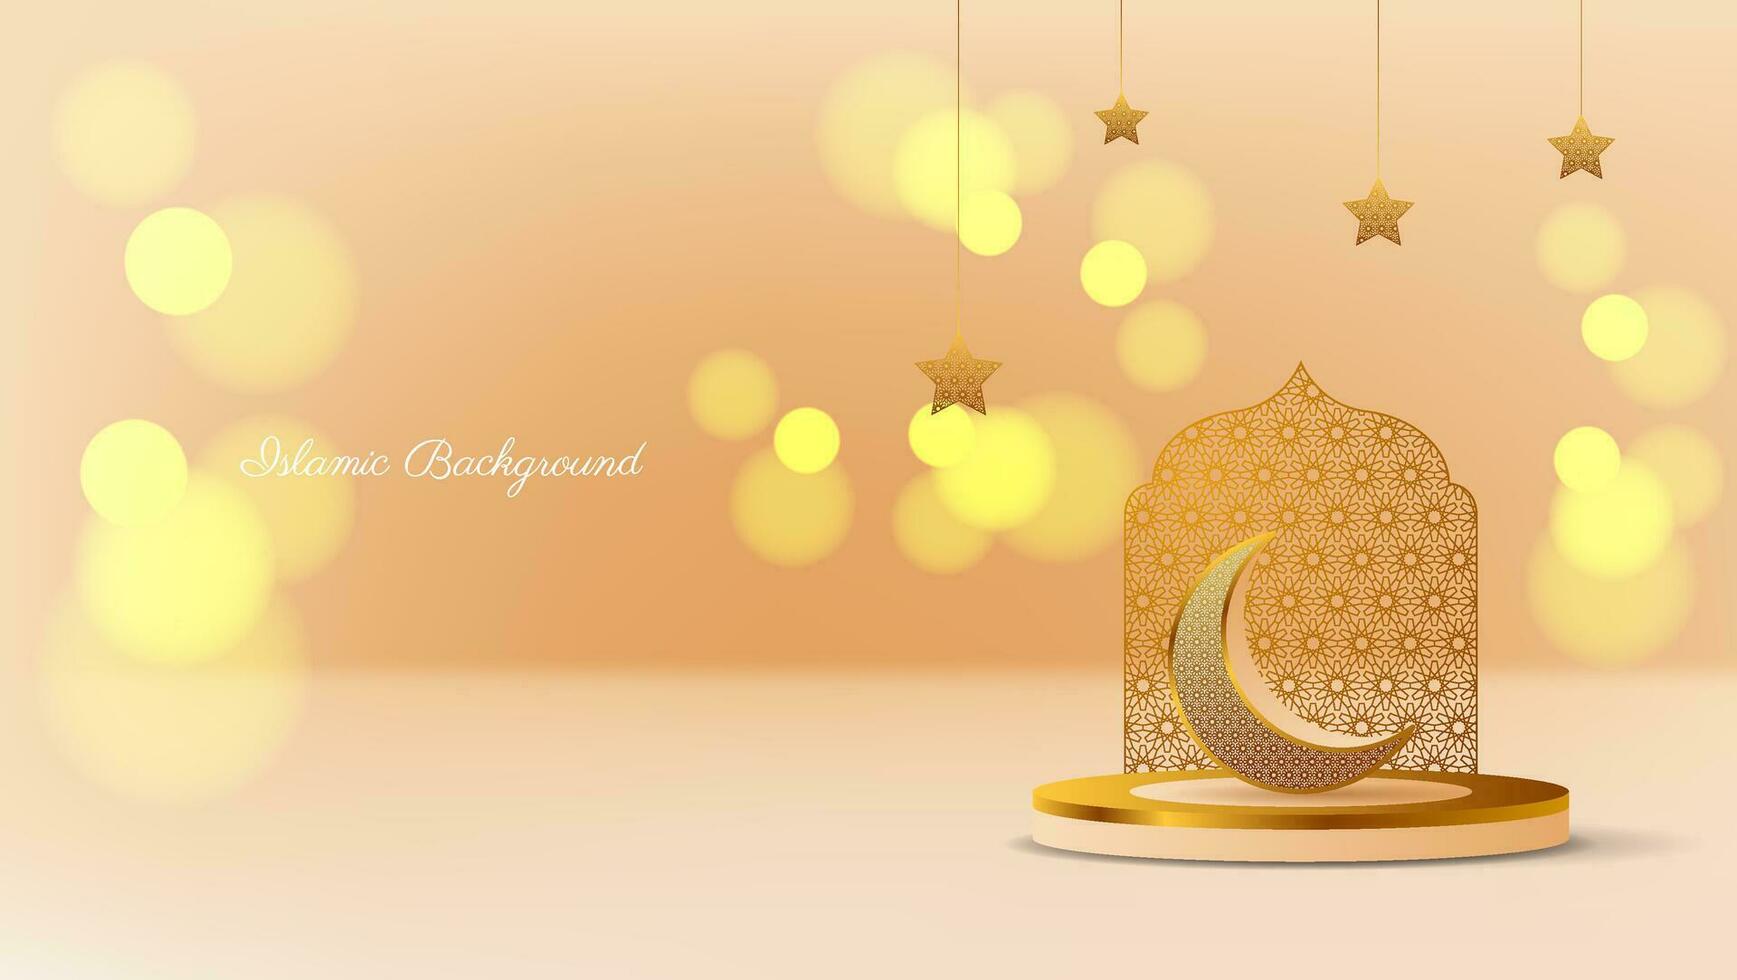 luxe Islamitisch achtergrond met halve maan, sterren, podium en bokeh effect. vector illustratie